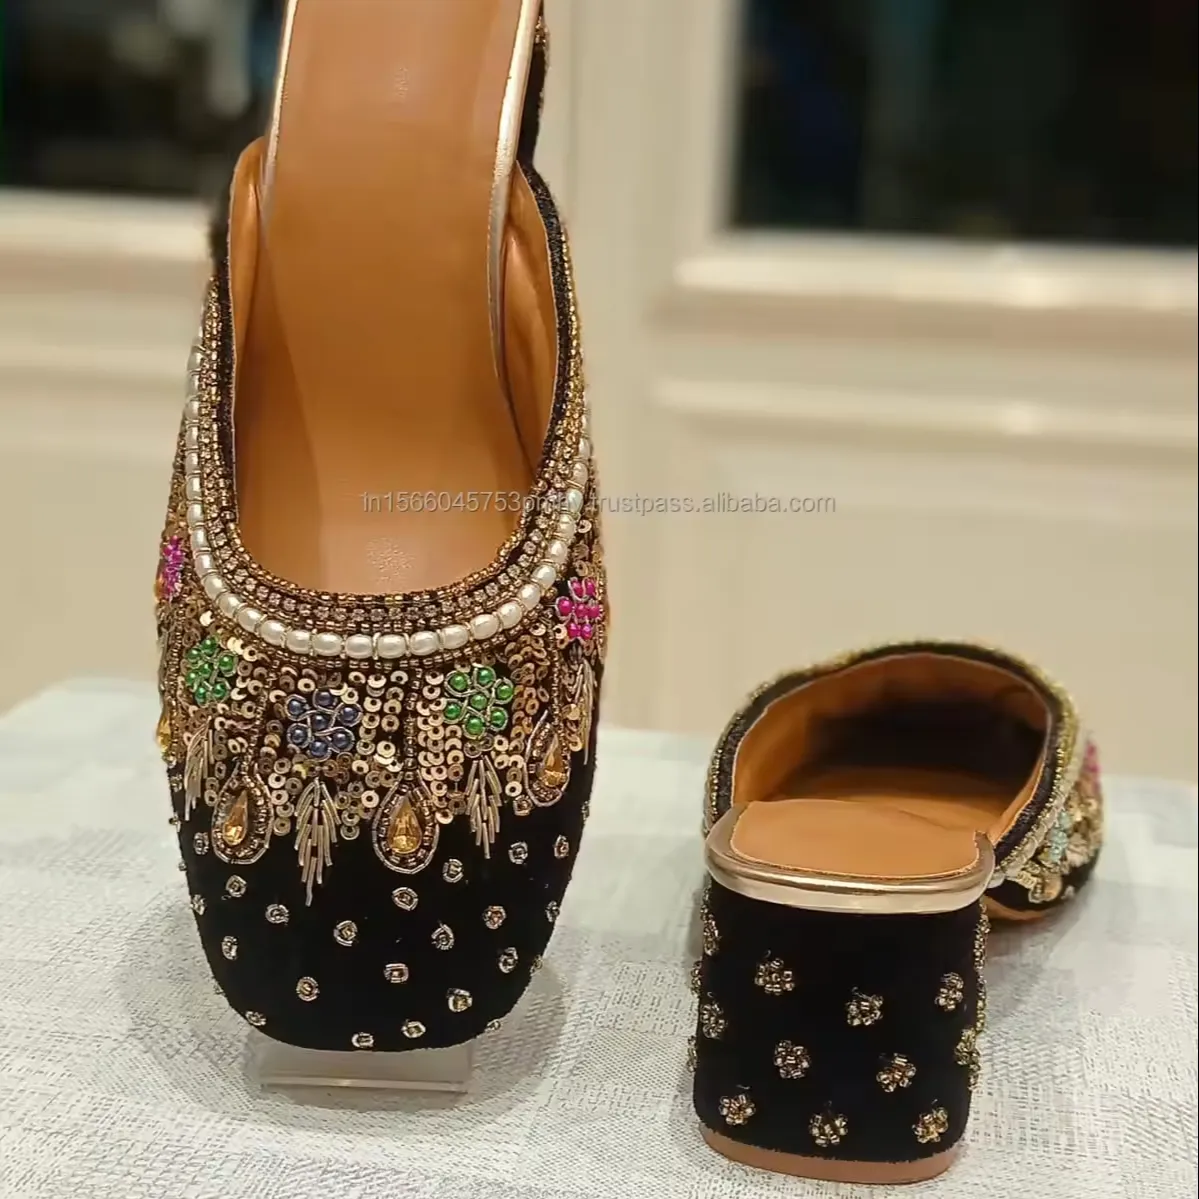 Sapatos Jutti femininos elegantes de alta qualidade com desenho bordado feito à mão, novo bloco de salto redondo para mulheres, sapatos personalizados de alta qualidade